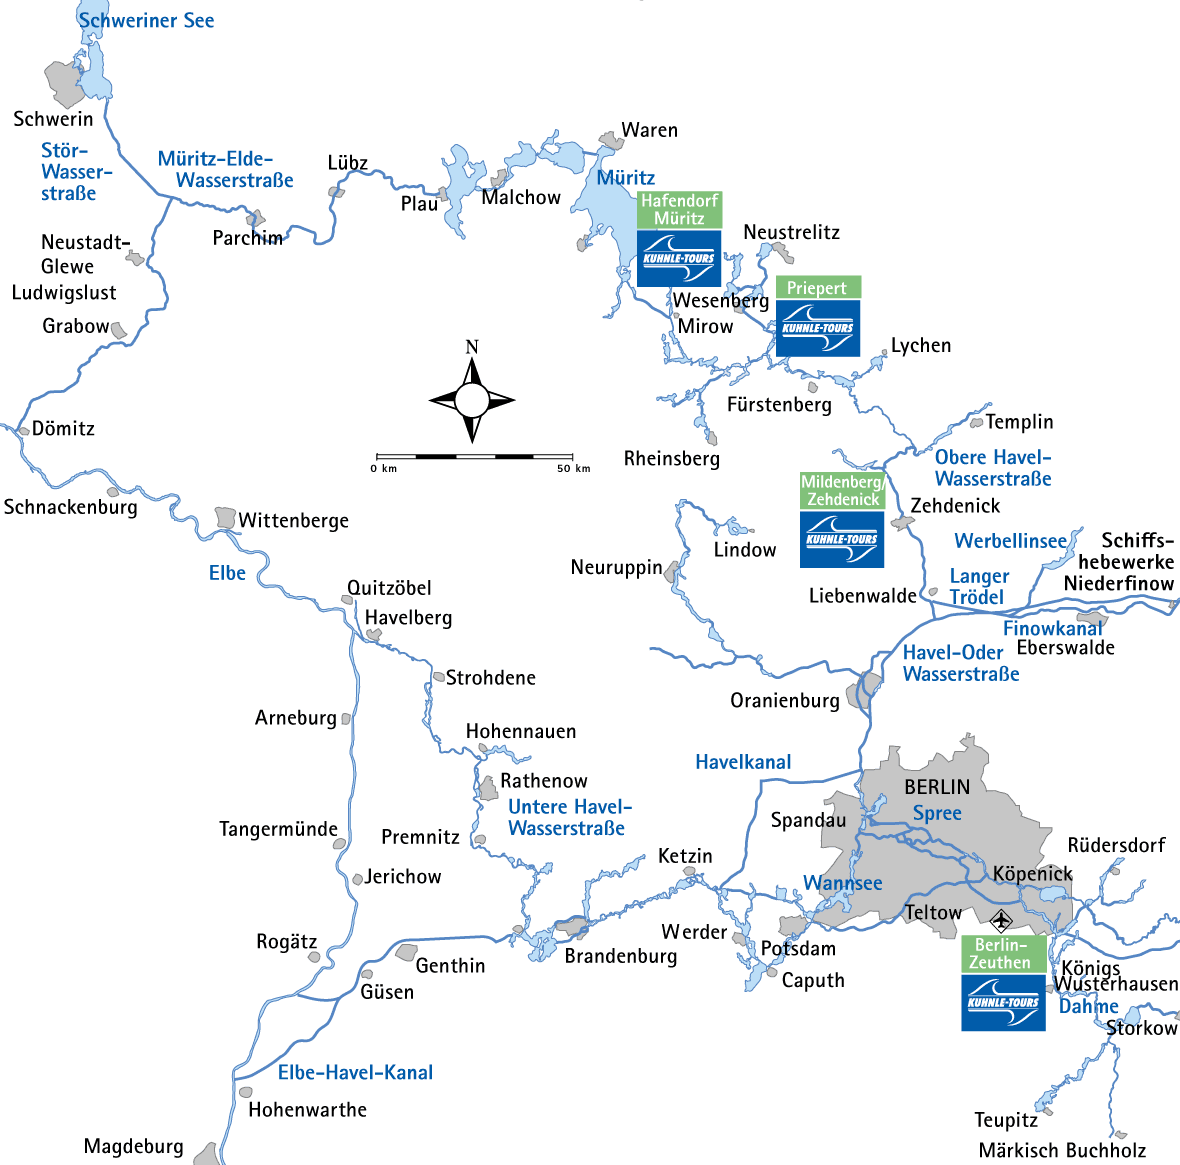 Karte für den Elbe-Rundtörn mit eingezeichneten Kuhnle Tours Basen